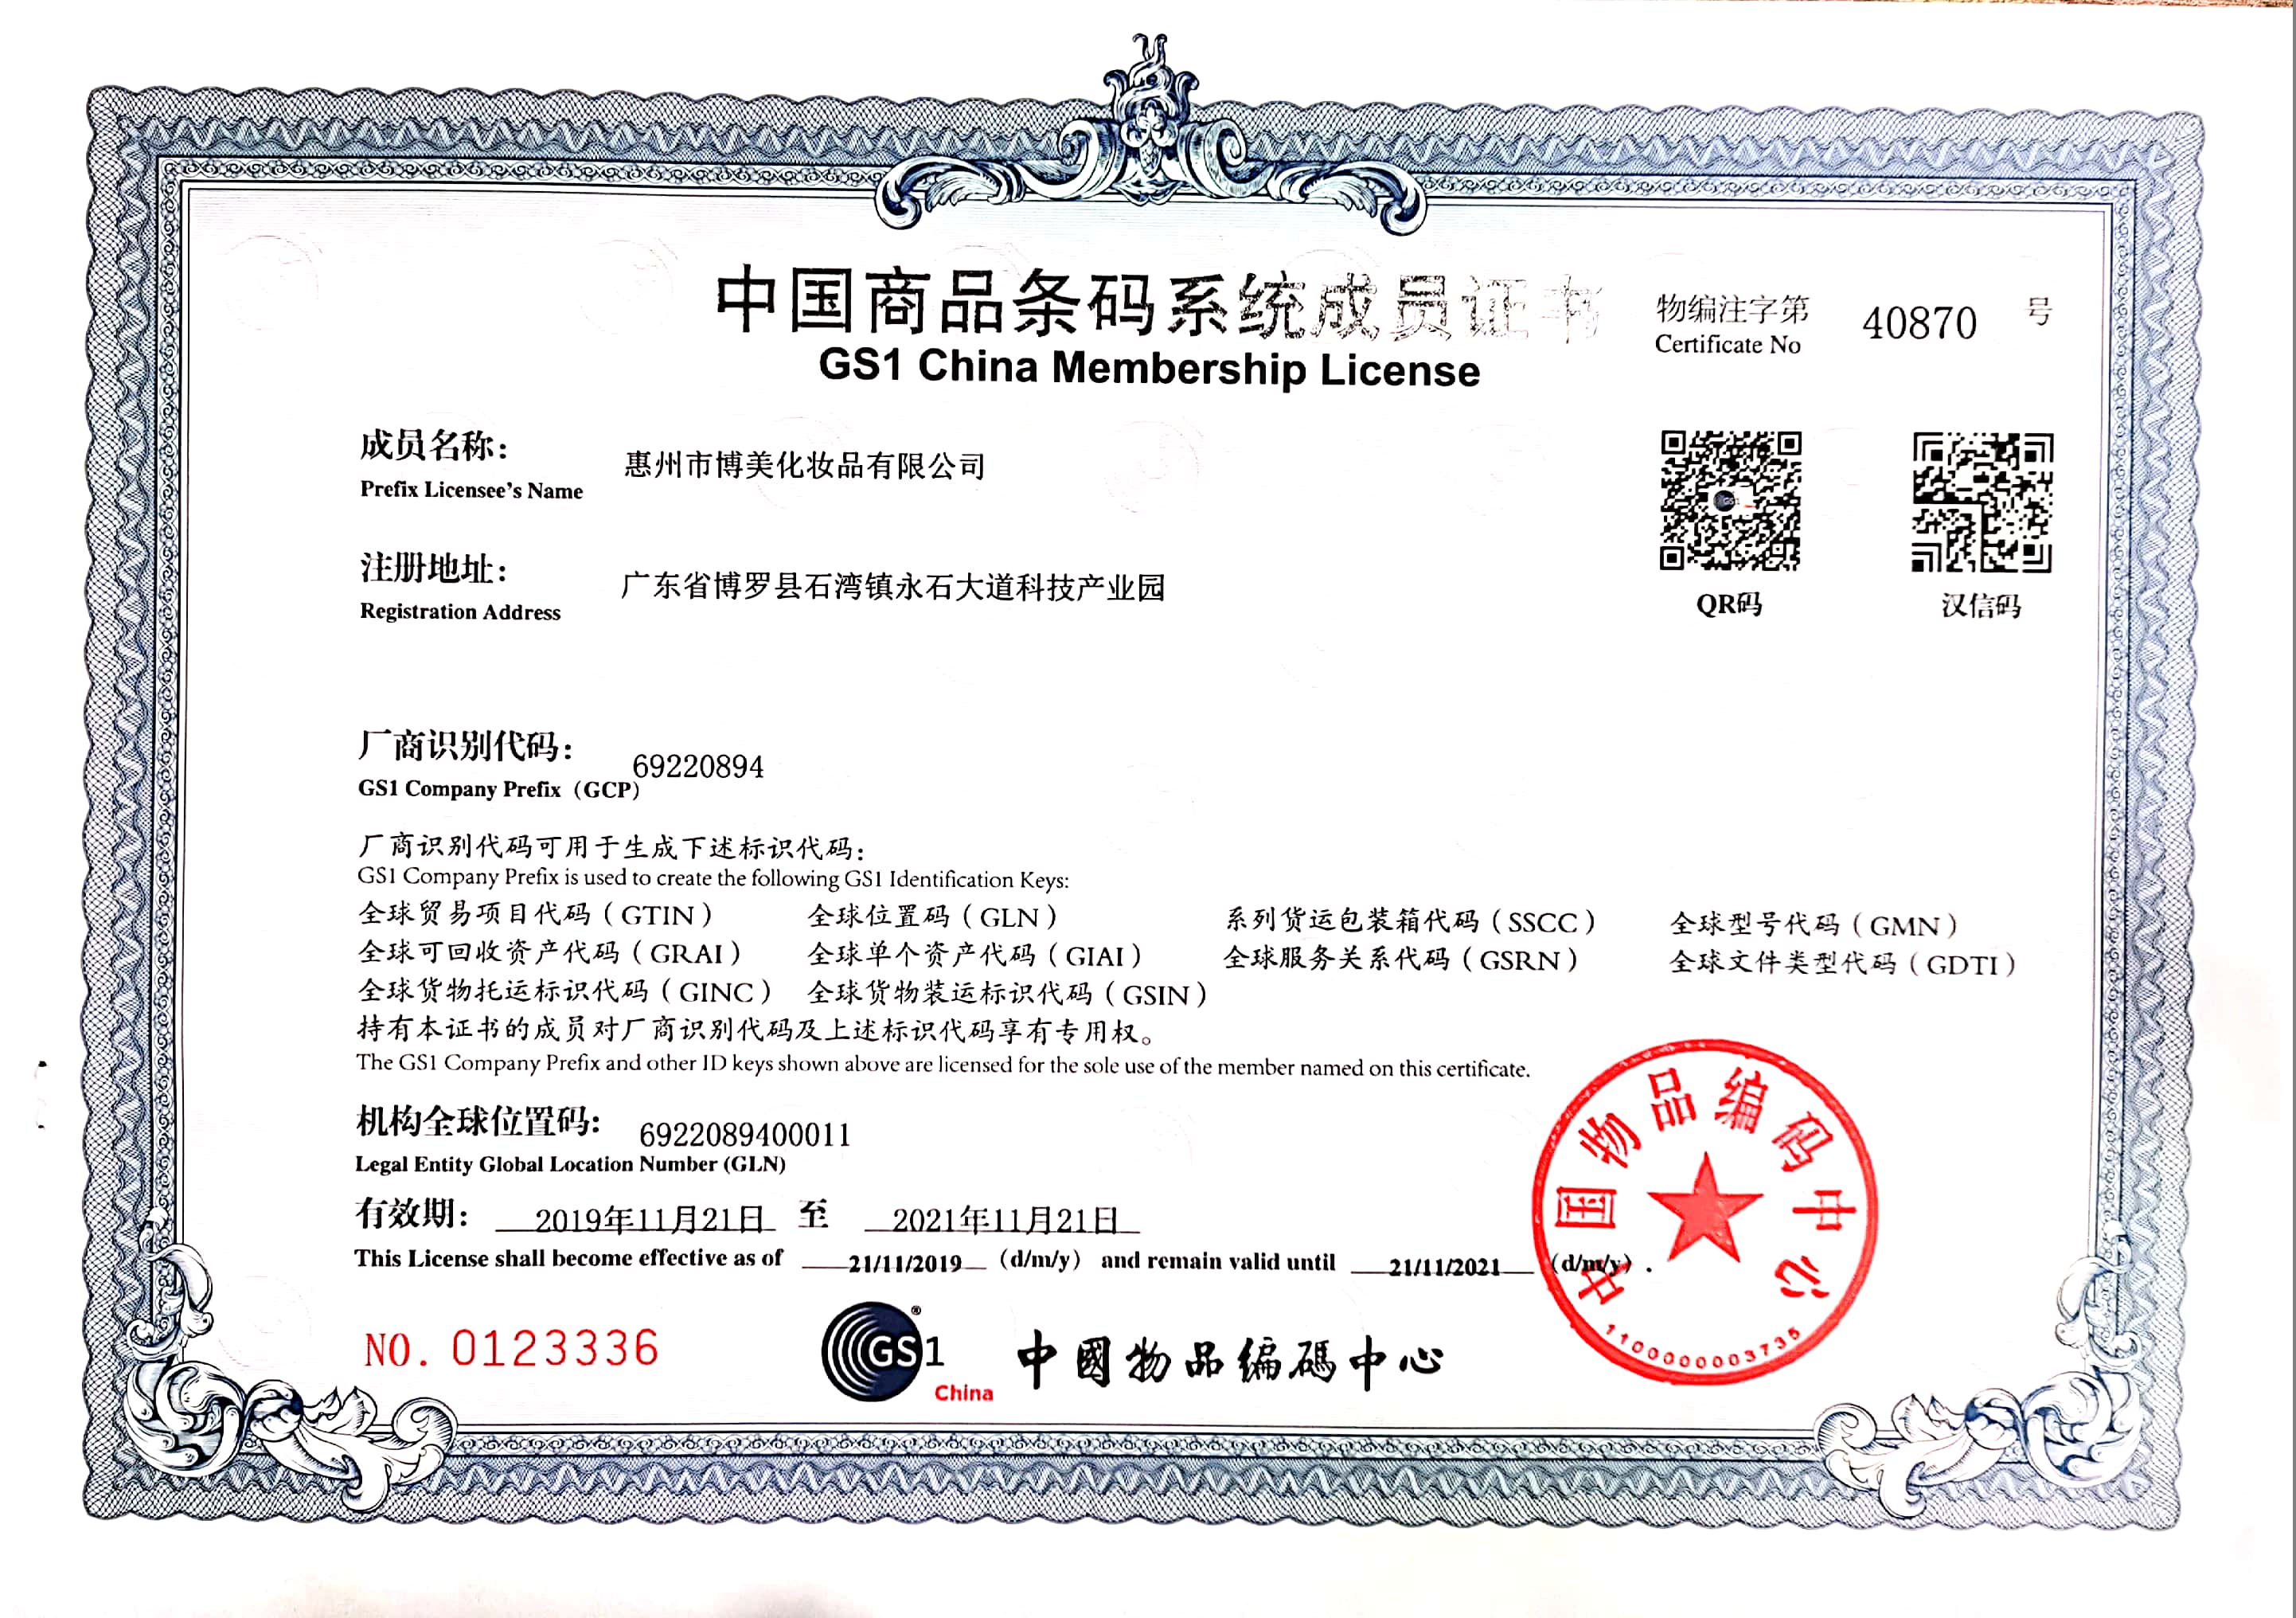 Certificato membro del sistema di codici a barre delle merci in Cina 2019-2021